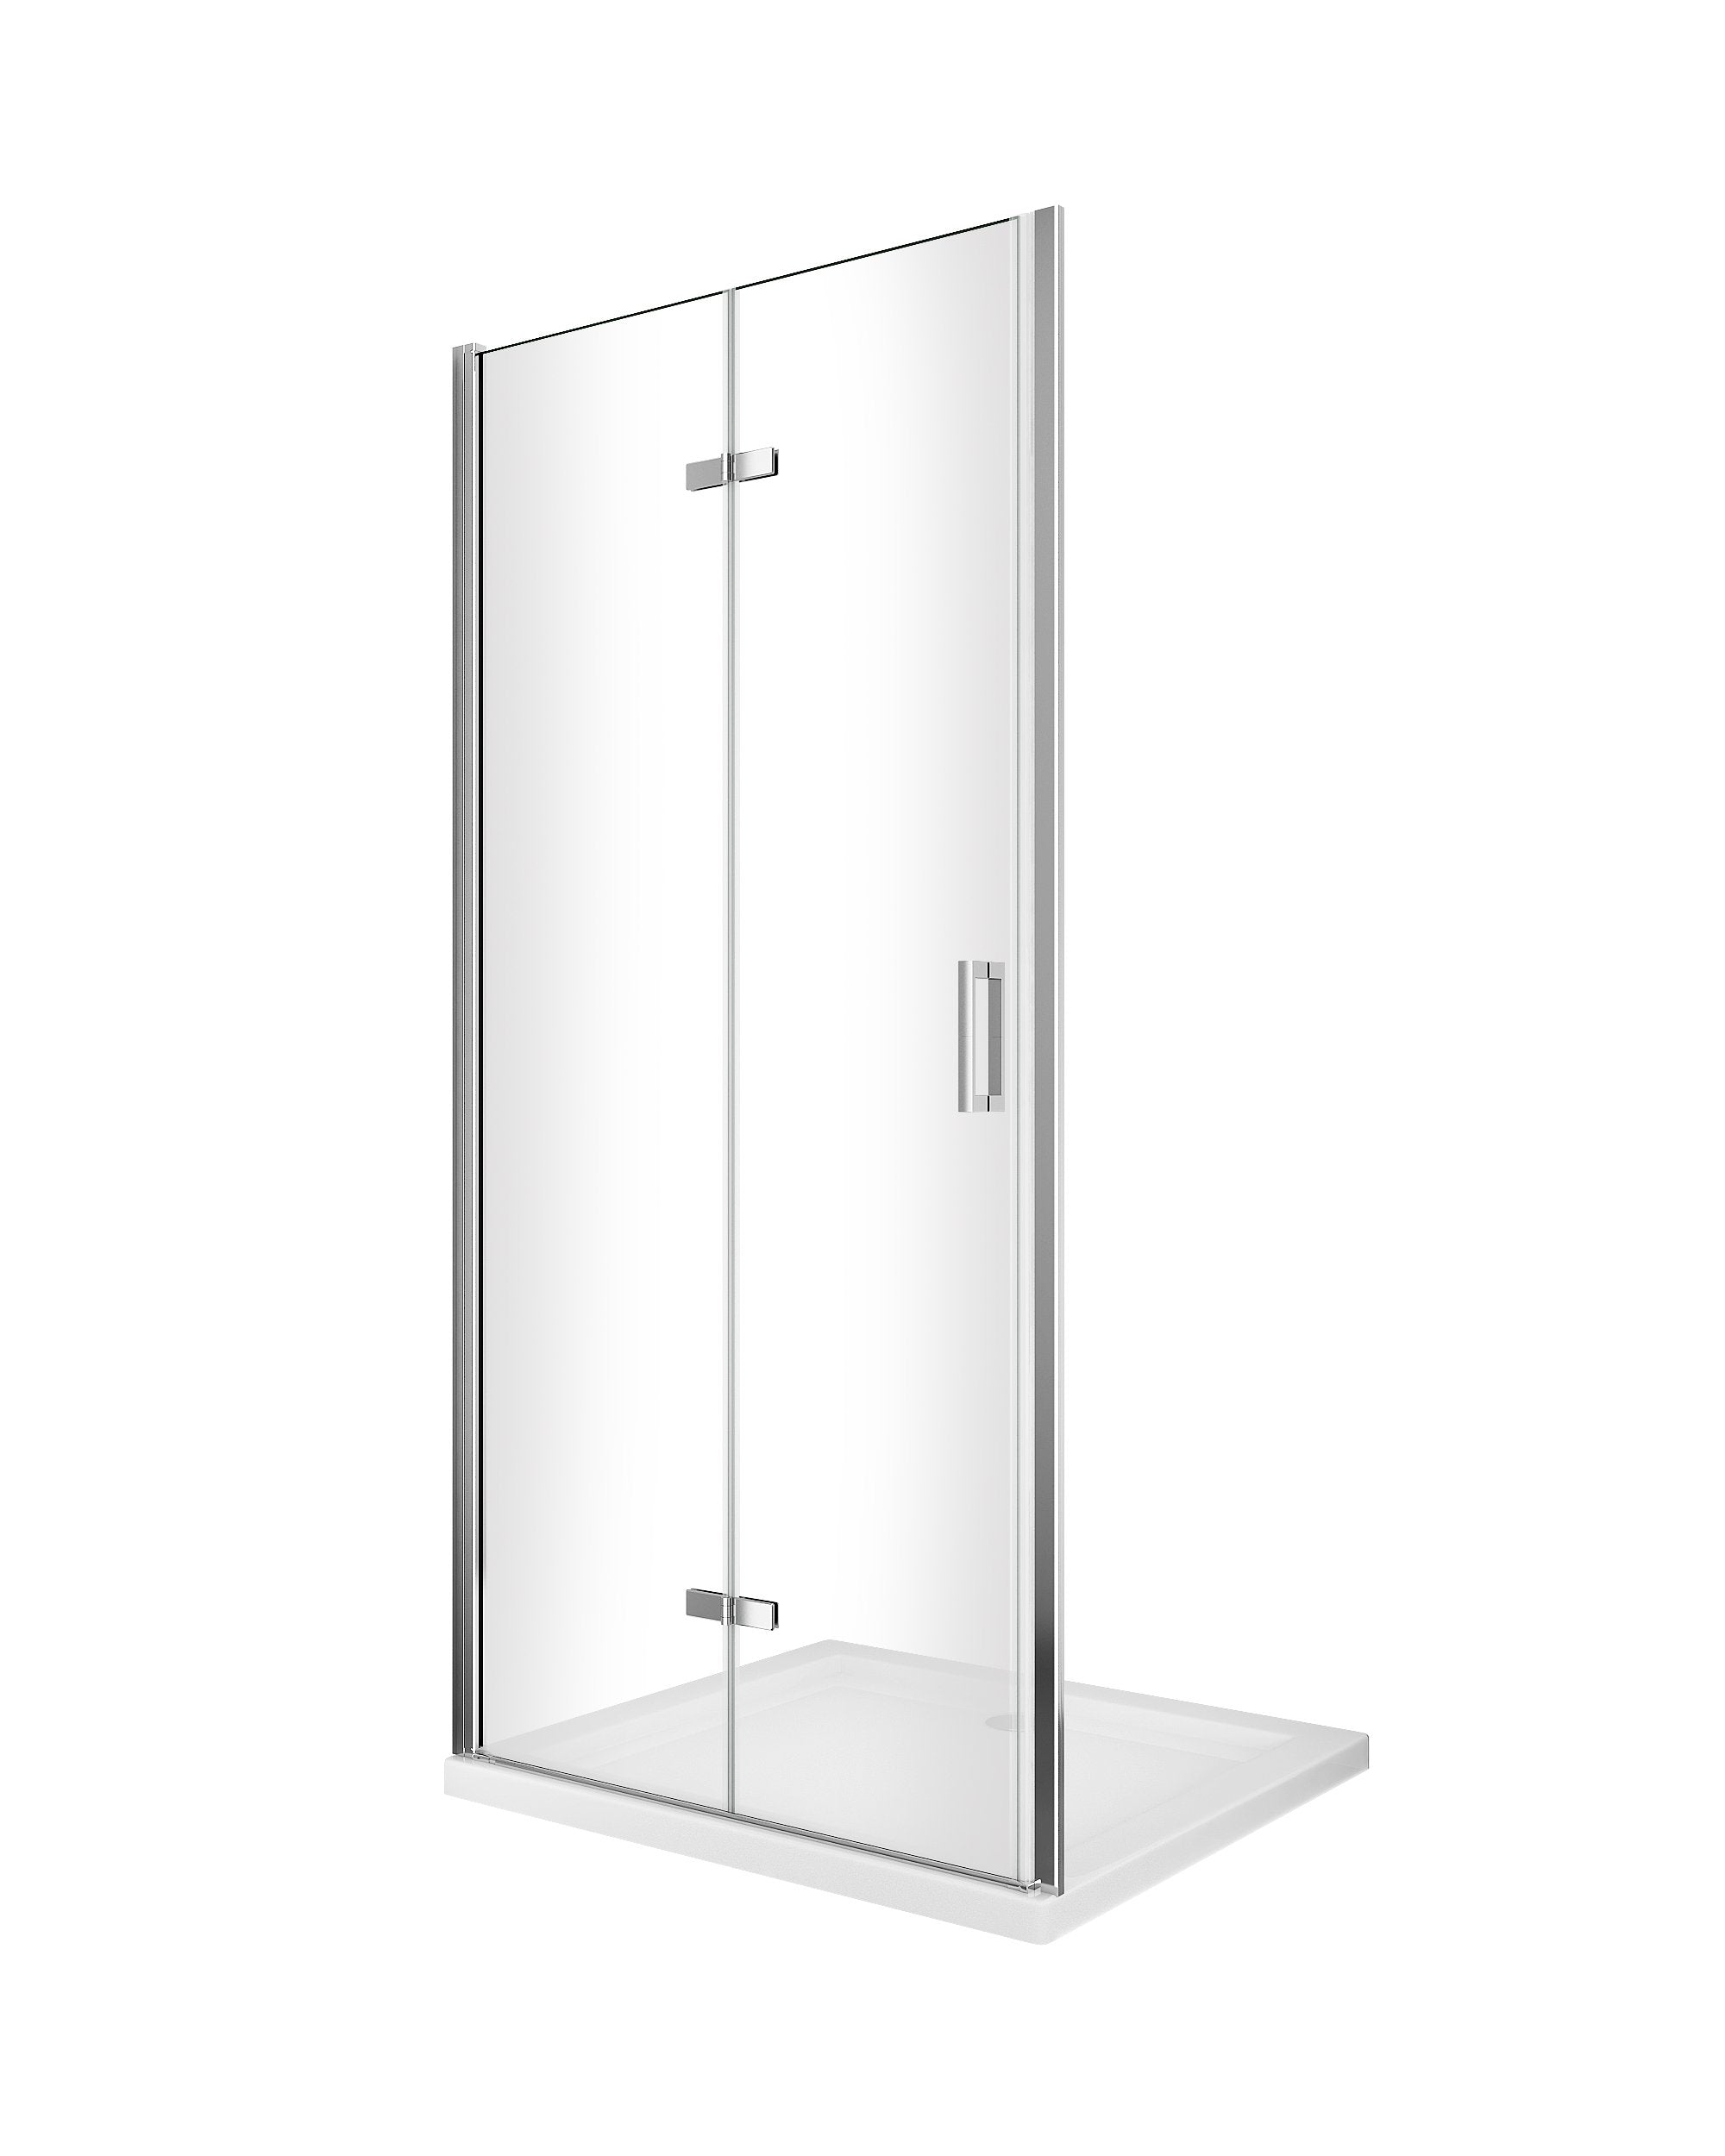 Porta box doccia con apertura a libro pieghevole a soffietto per installazione in nicchia H 190 cromo trasparente anticalcare misura 98-101,5